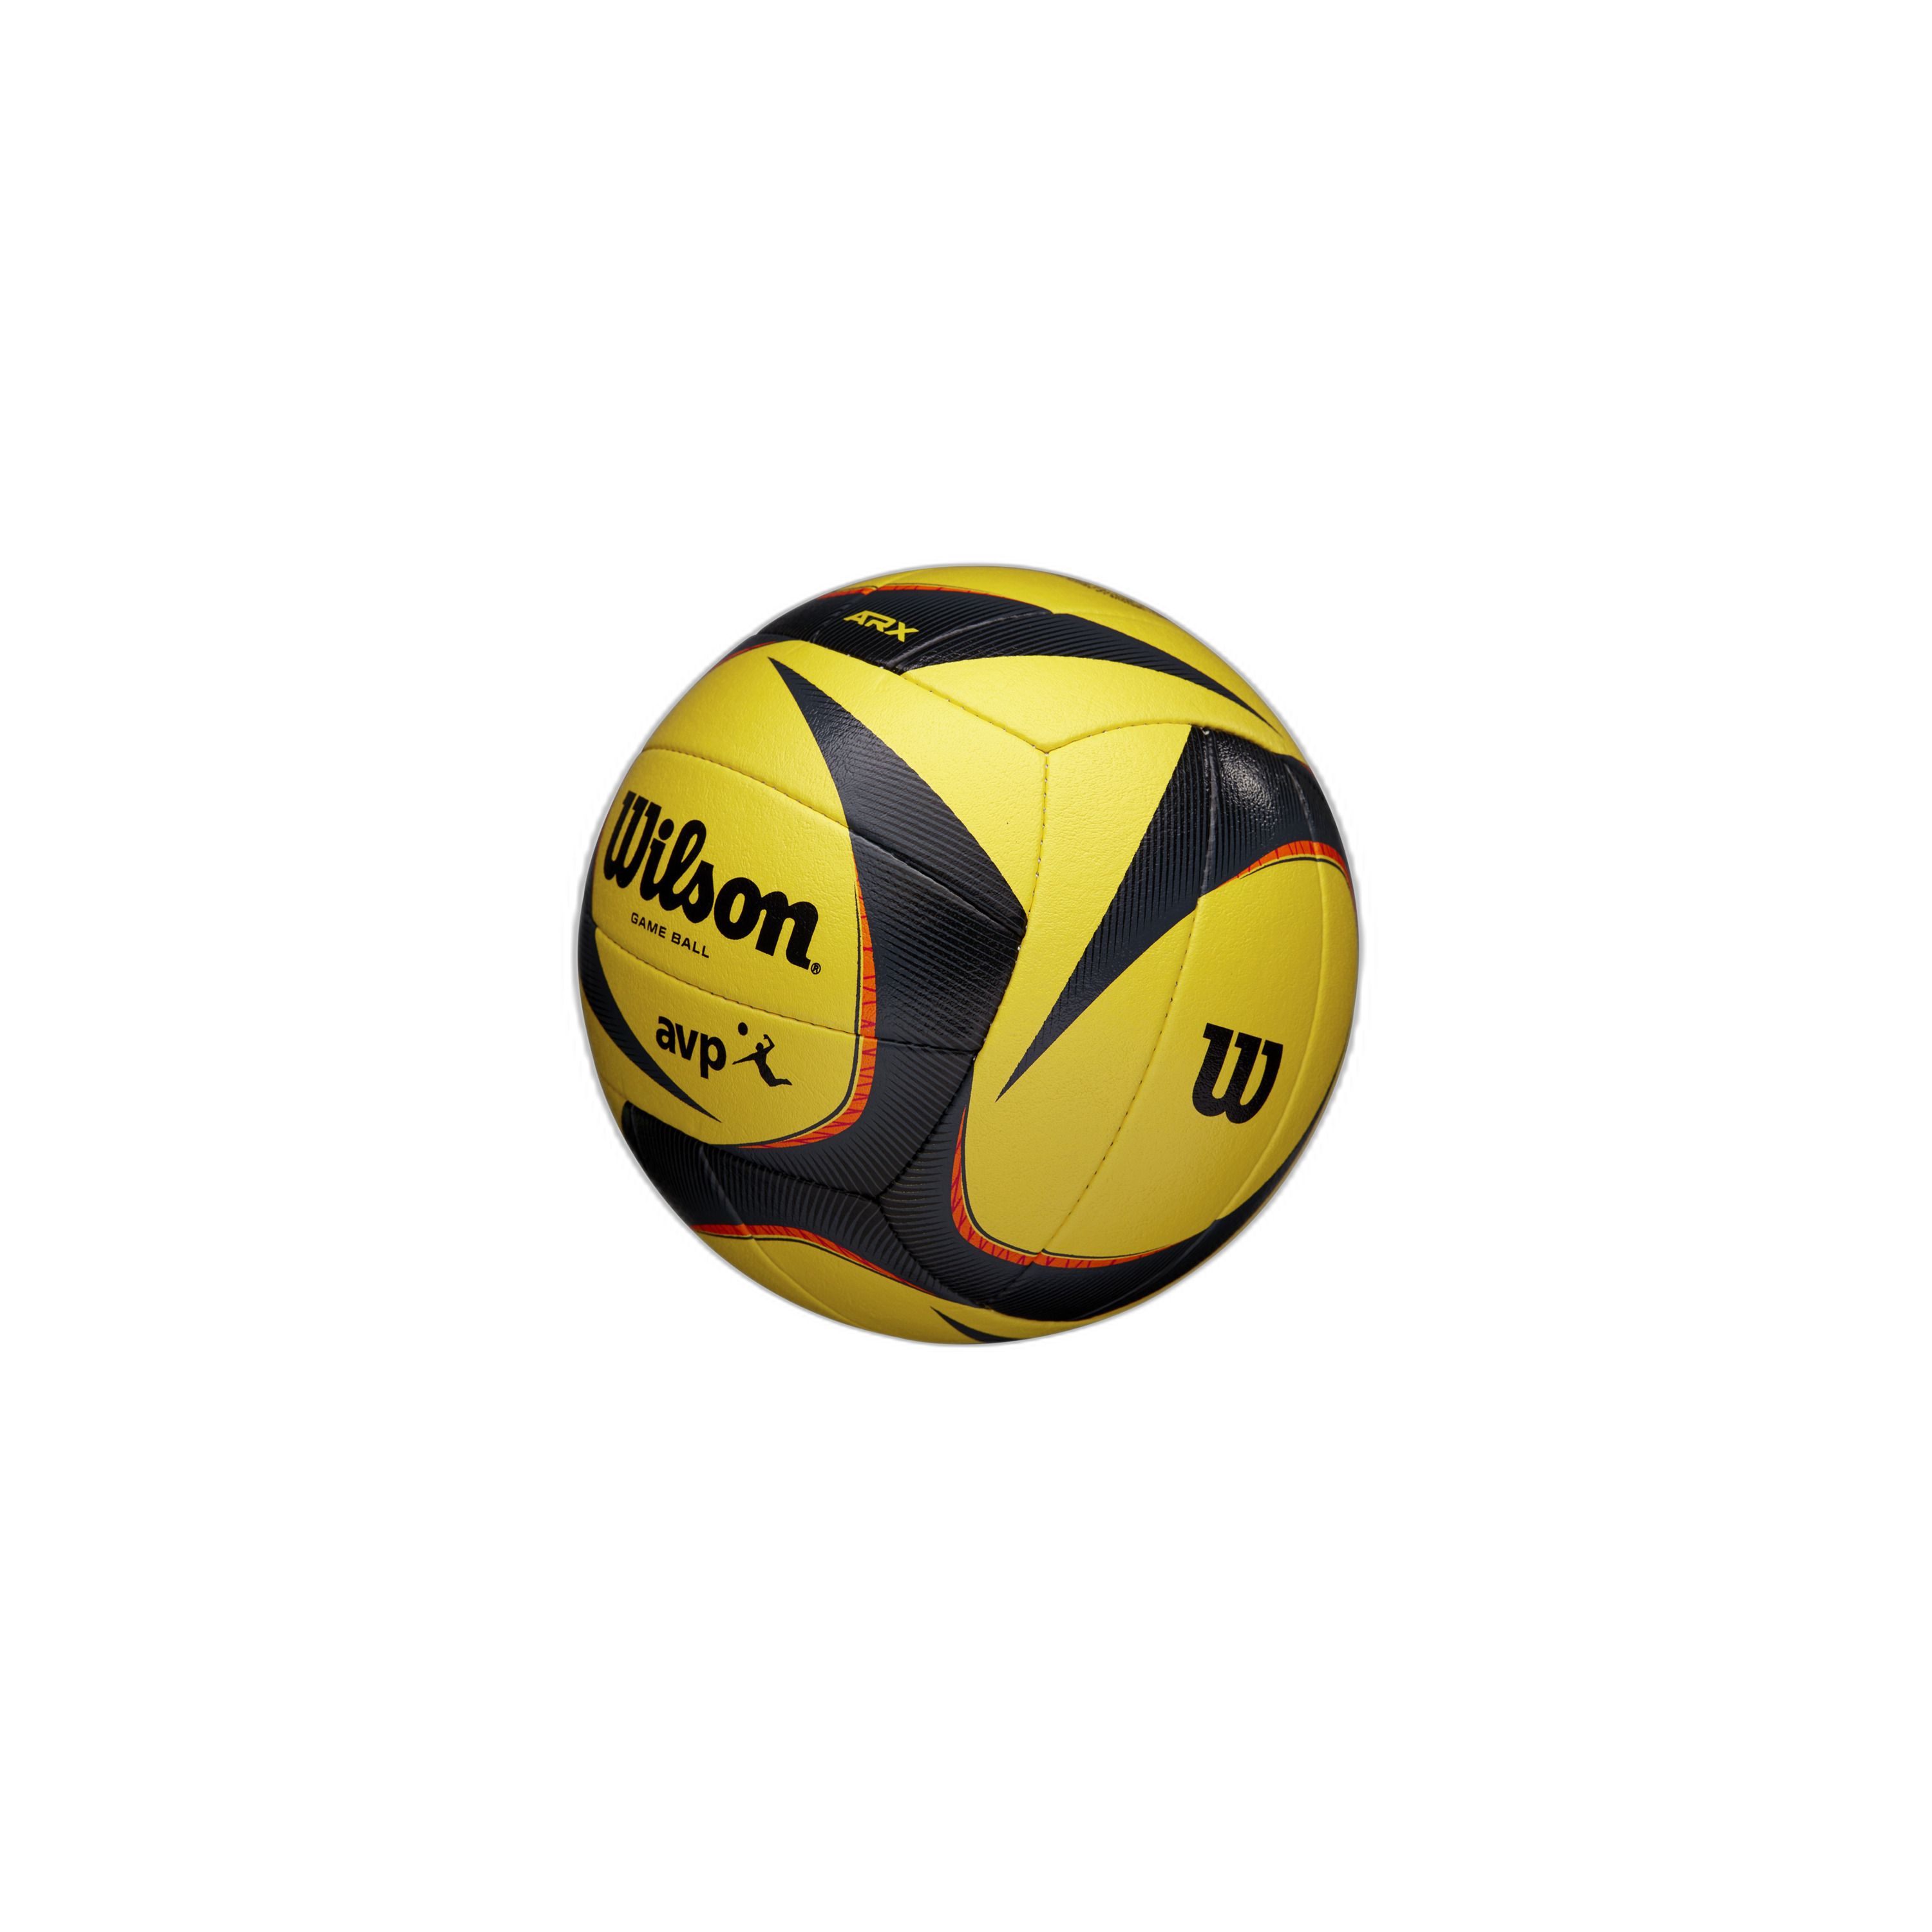 Balón Voleiboll Wilson Arx Avp Vb Official